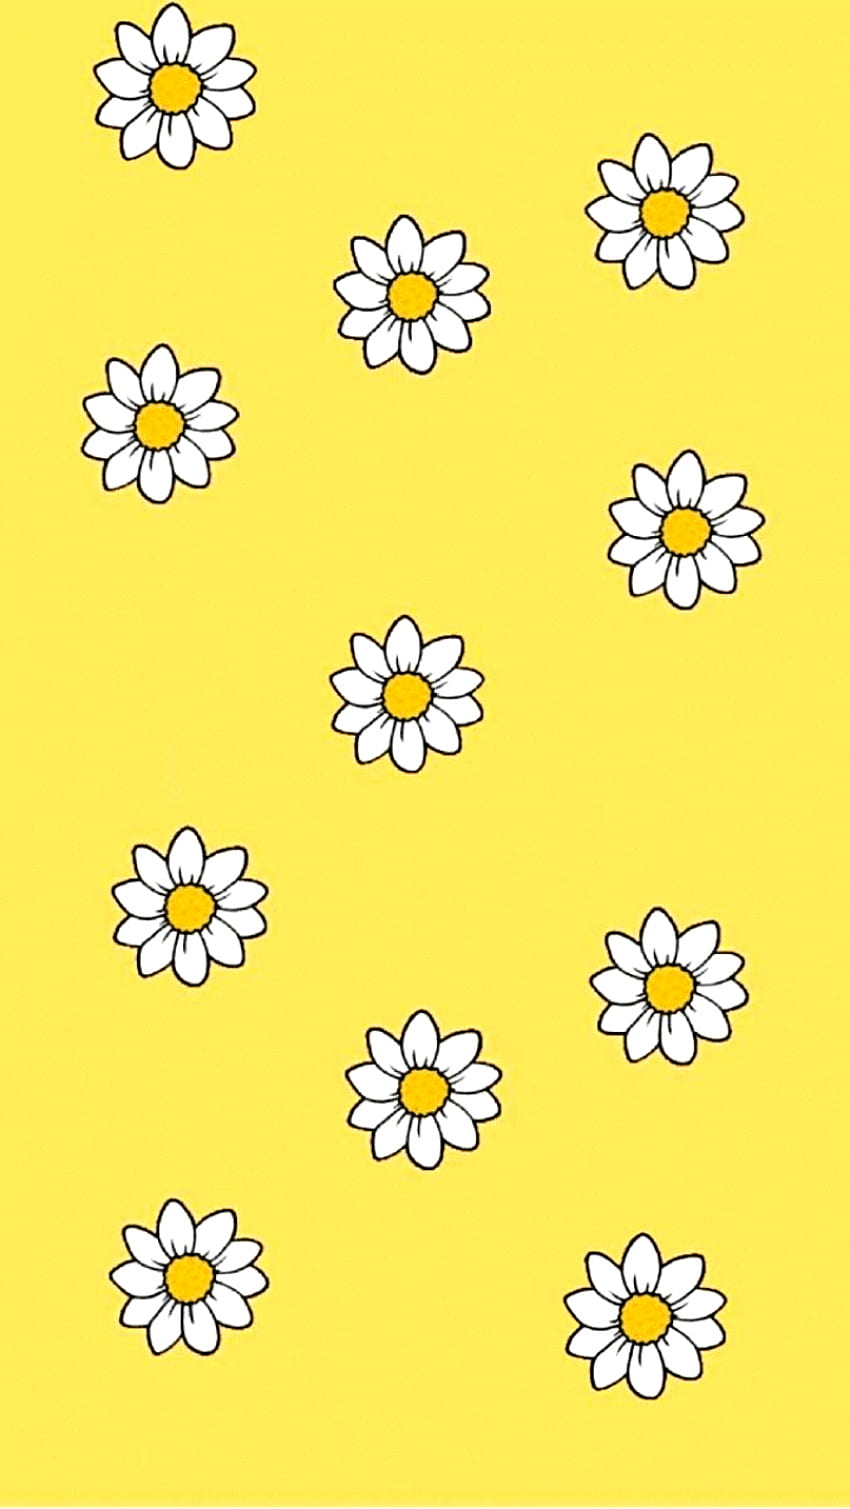 Bạn thích màu vàng, bạn thích những hình ảnh dễ thương và yêu đời? Hãy ghé qua Tumblr và tìm kiếm những hình nền cute vàng tuyệt đẹp. Đó sẽ là một nguồn cảm hứng tuyệt vời cho những ai yêu thích màu sắc và đam mê trang trí.